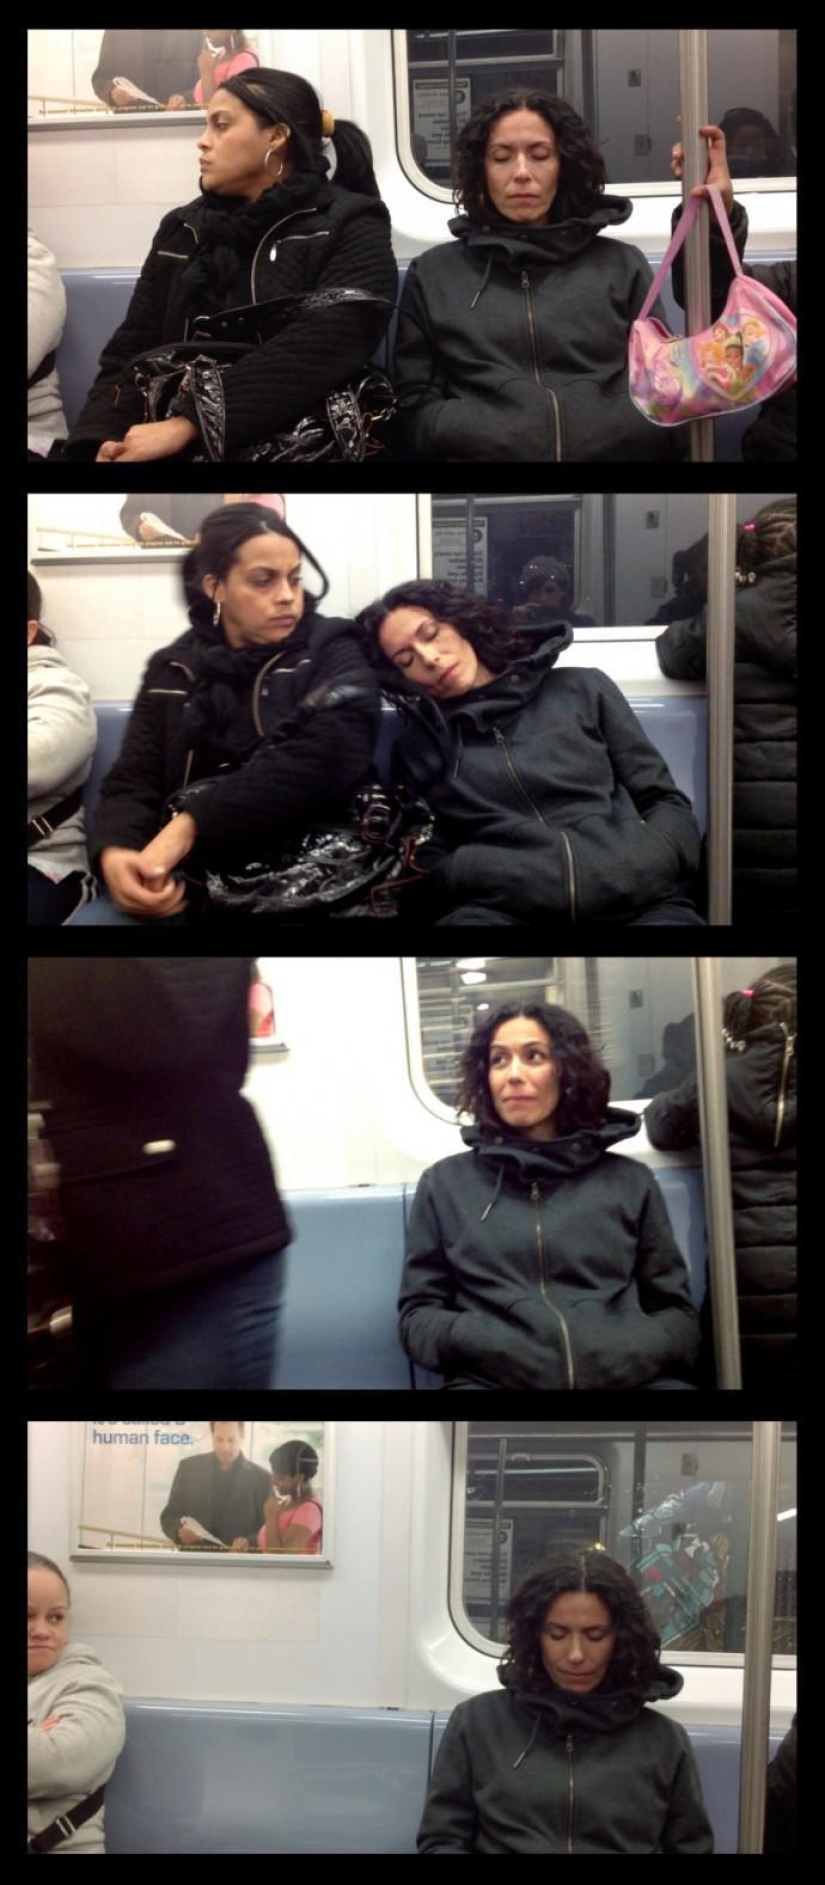 Fotos curiosas de la cama de pasajeros en el metro